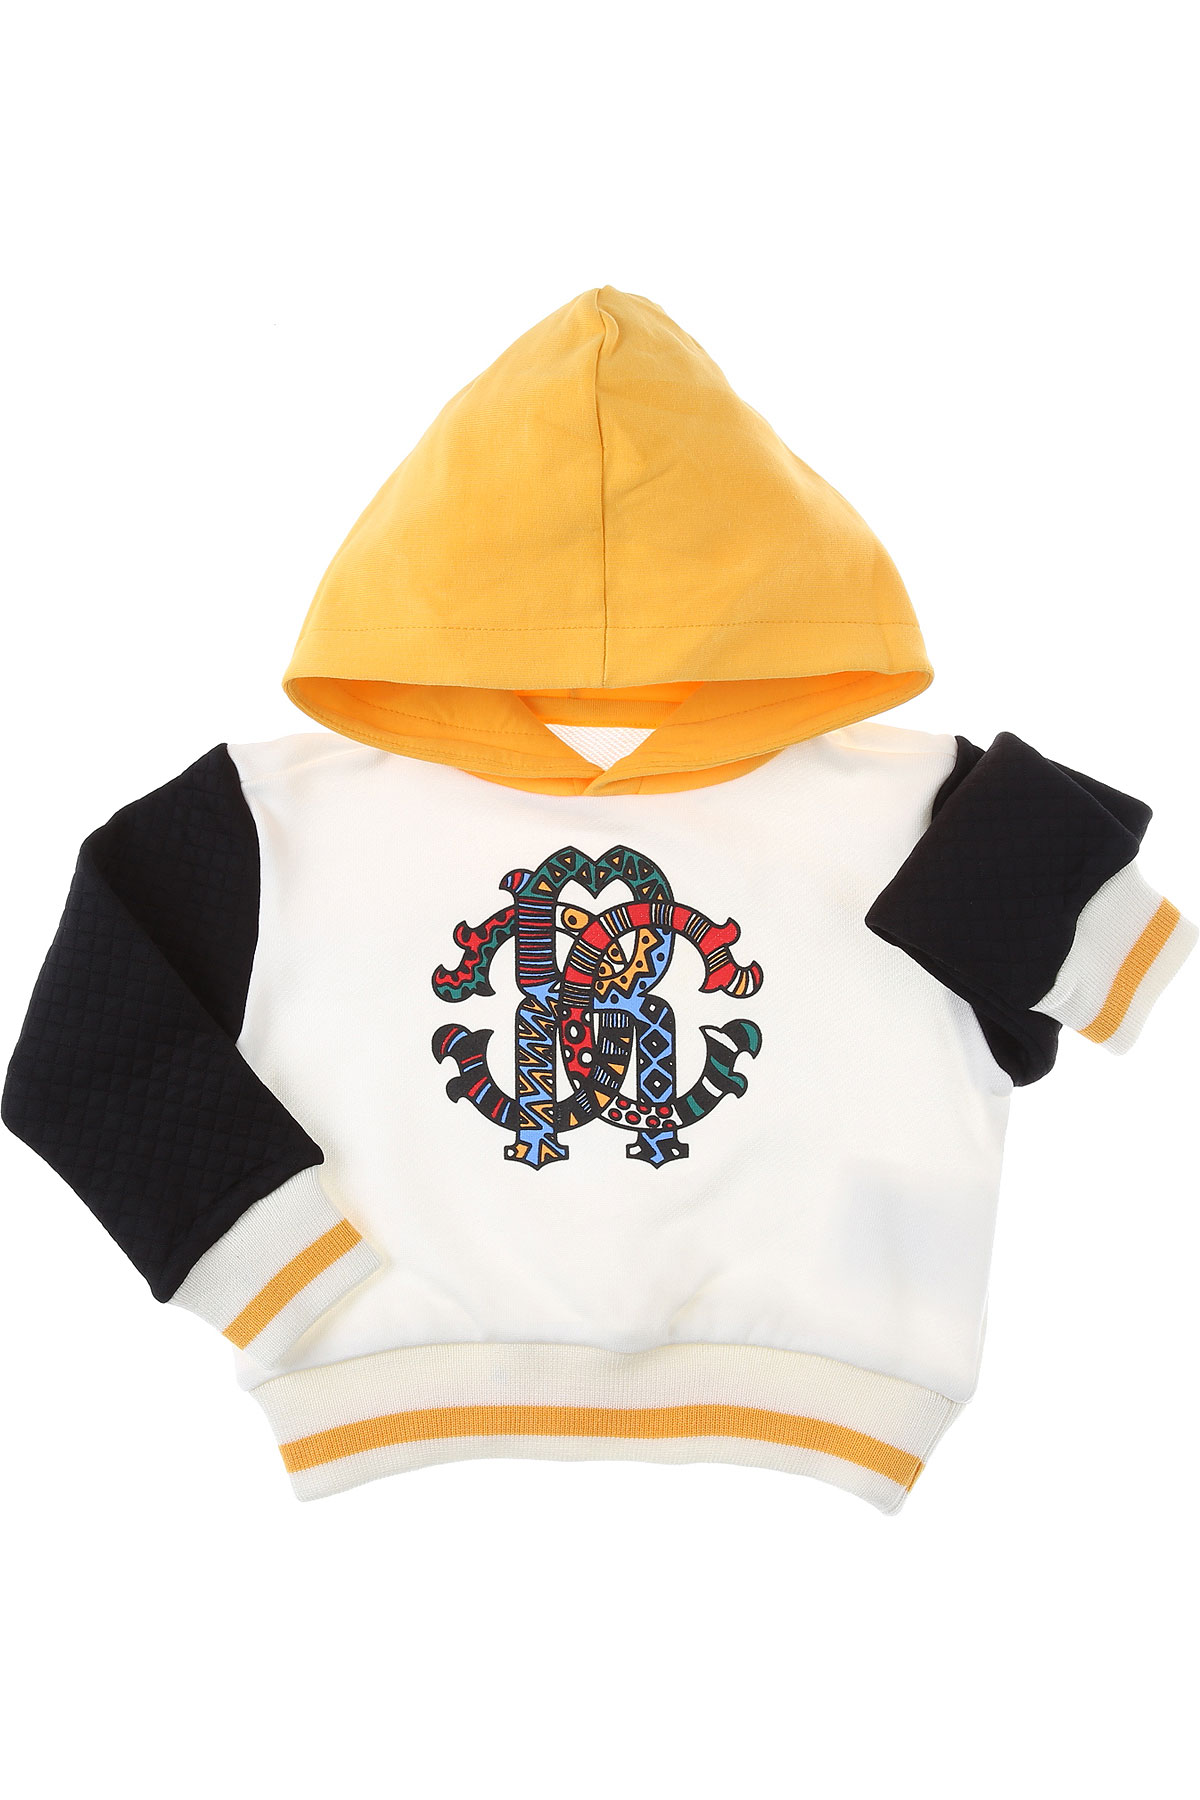 Roberto Cavalli Baby Sweatshirt & Kapuzenpullover für Jungen Günstig im Sale, Weiss, Baumwolle, 2017, 18M 2Y 3Y